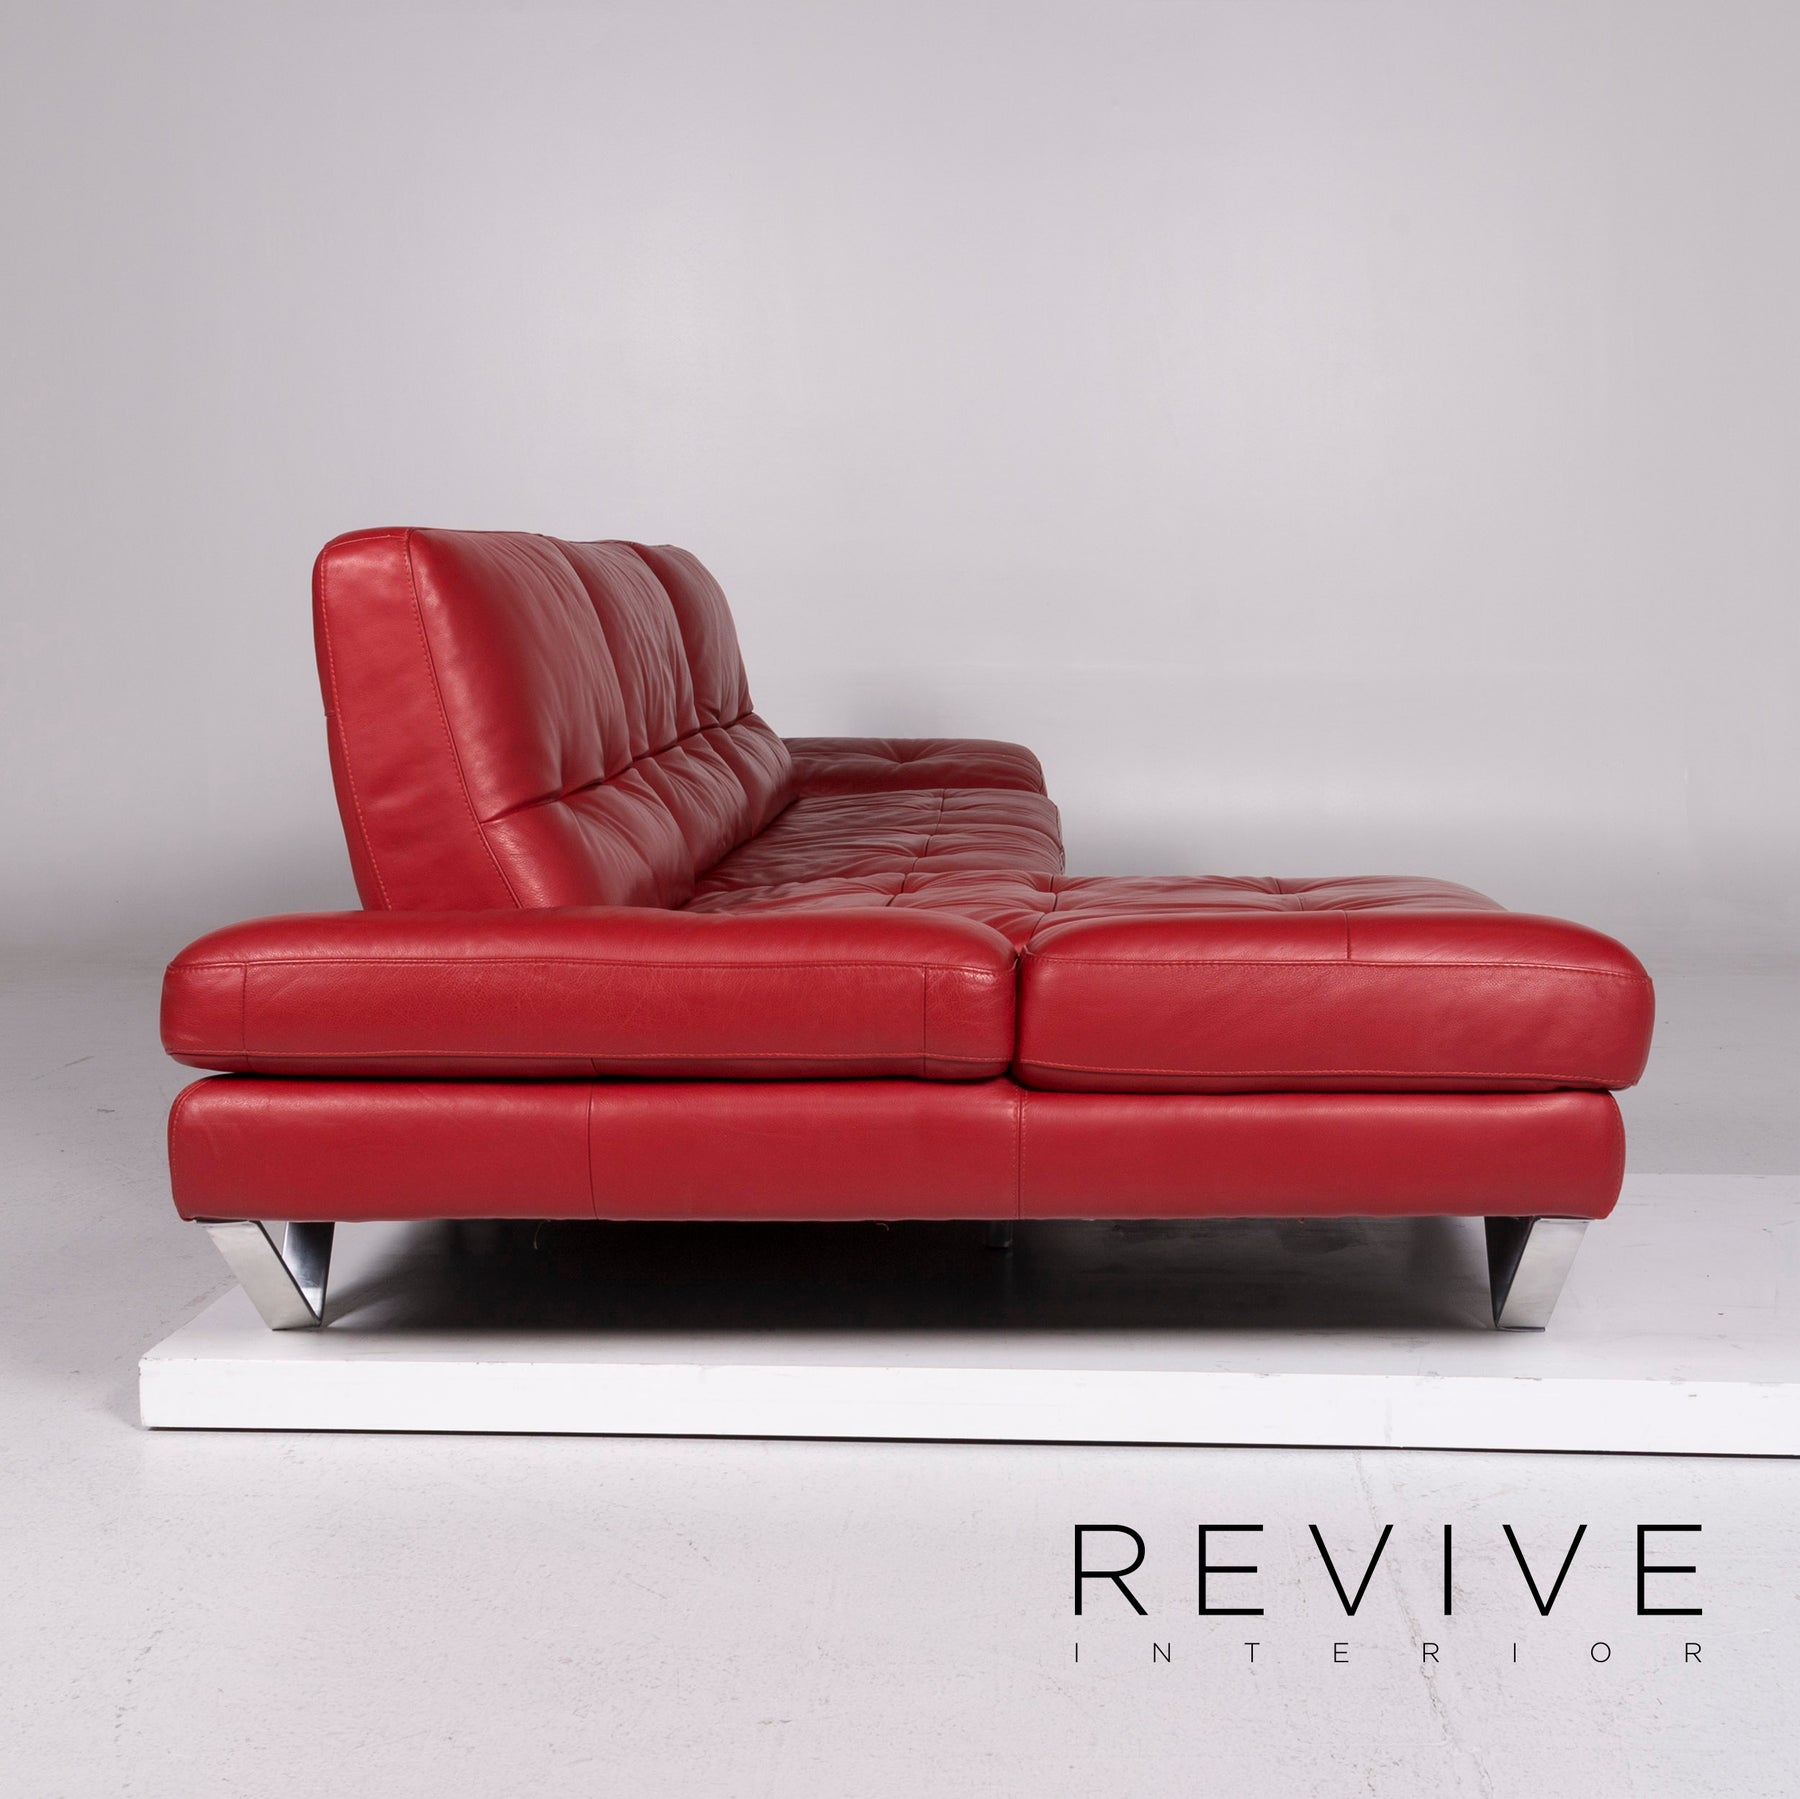 Kaufen Sie CouchCoaster - Der ultimative Getränkehalter für dein Sofa  (Rosso Red) zu Großhandelspreisen